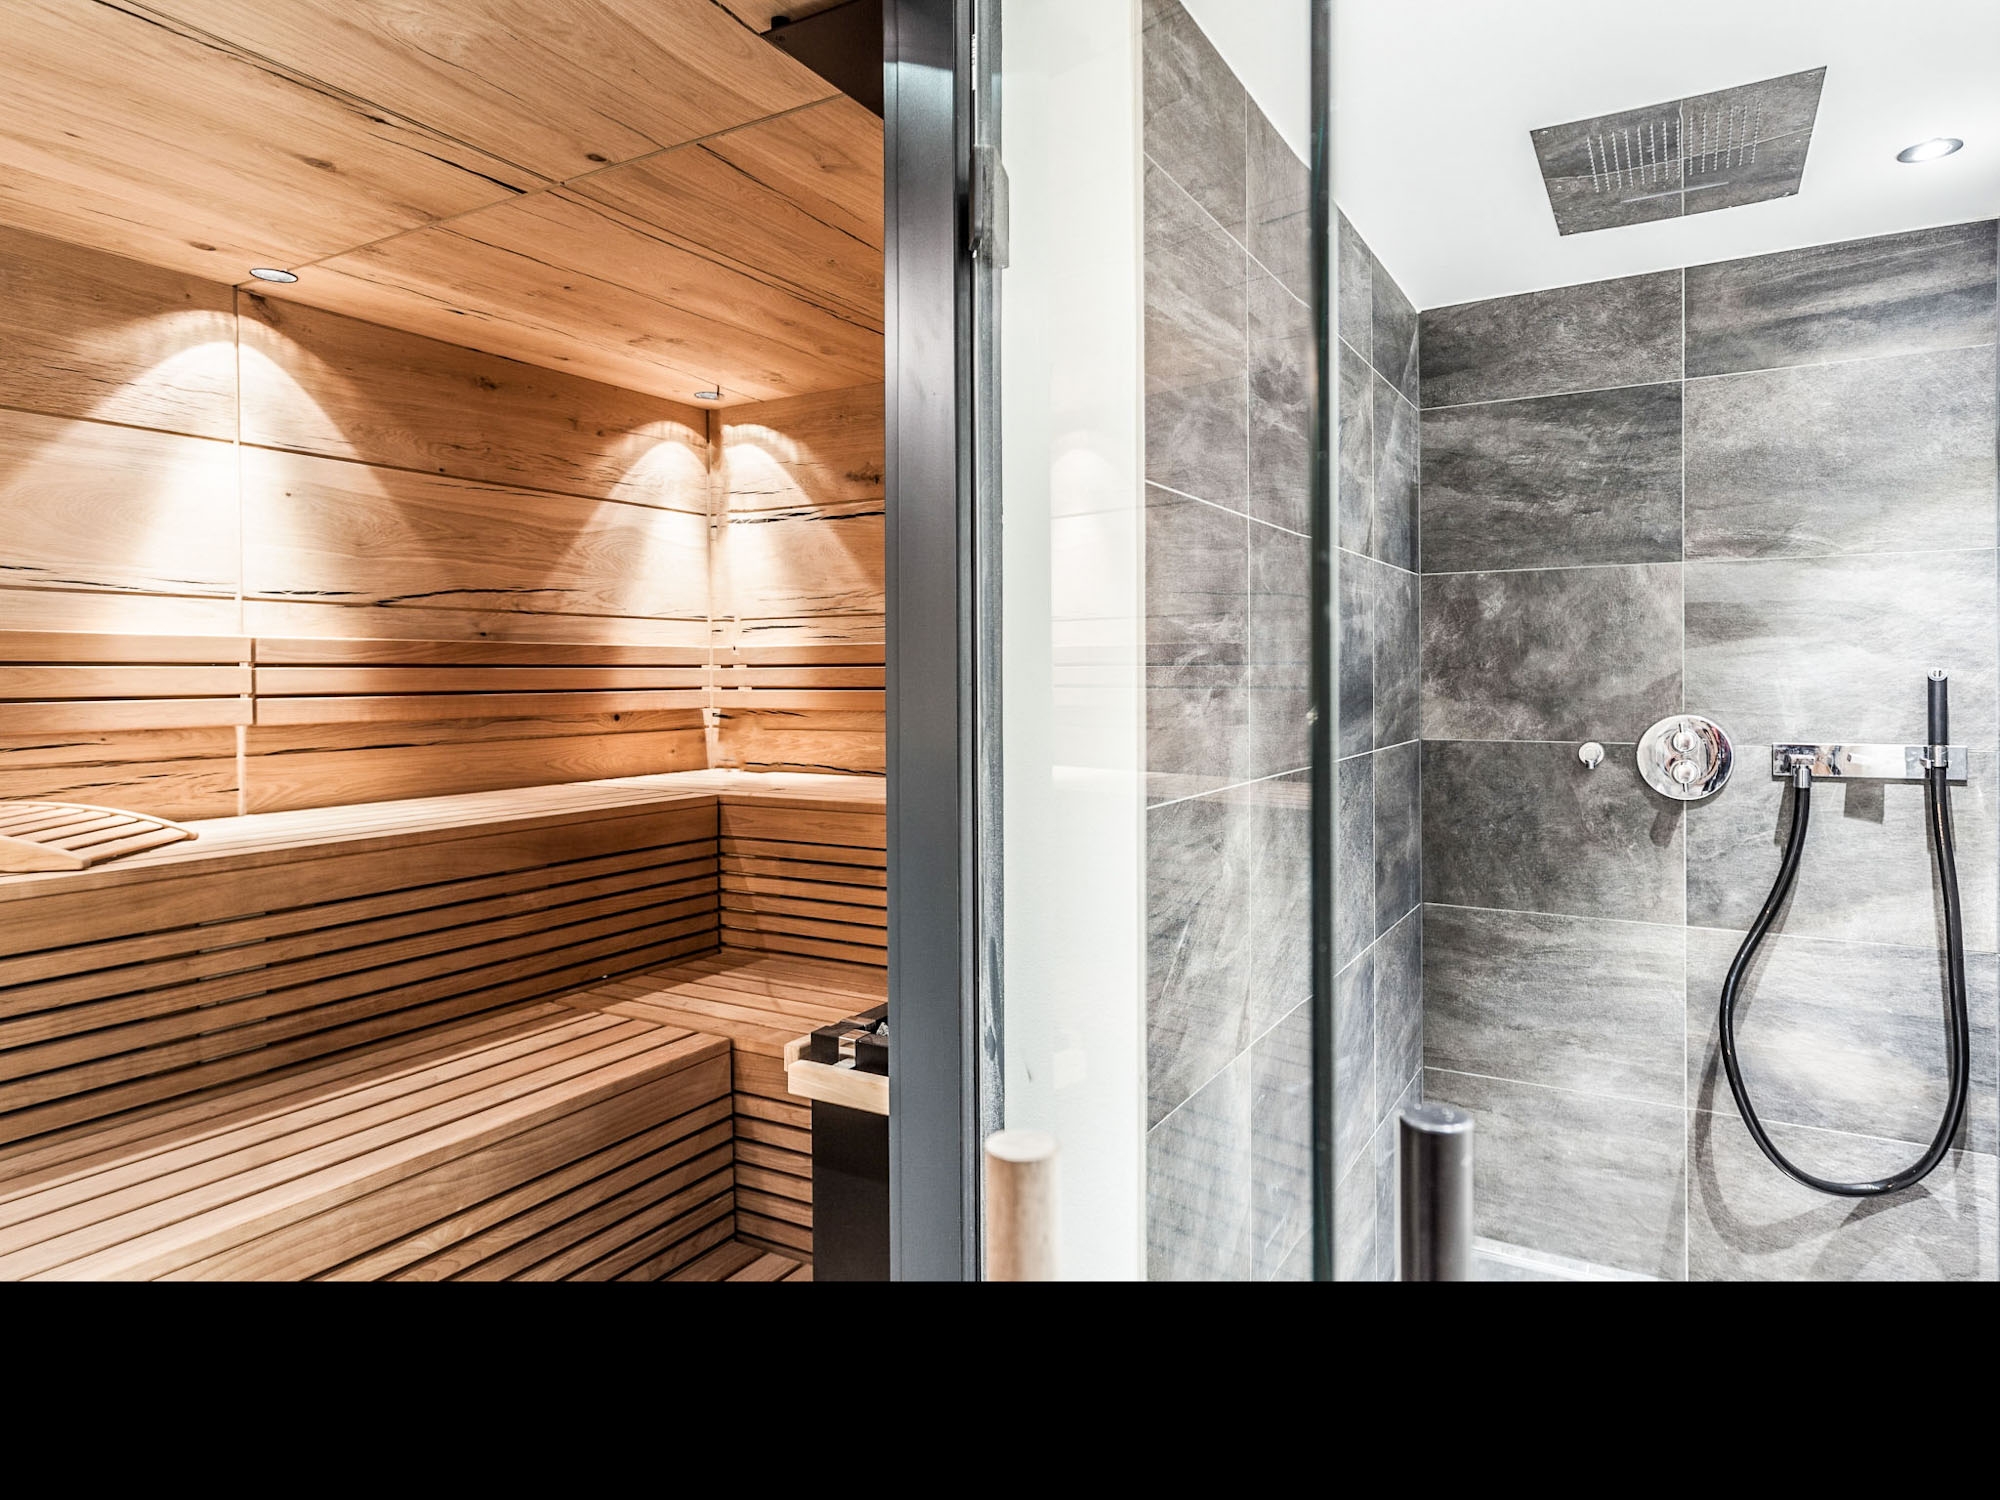 Luxus-Chalets im Montafon: Sauna mit Regendusche (Beispiel)